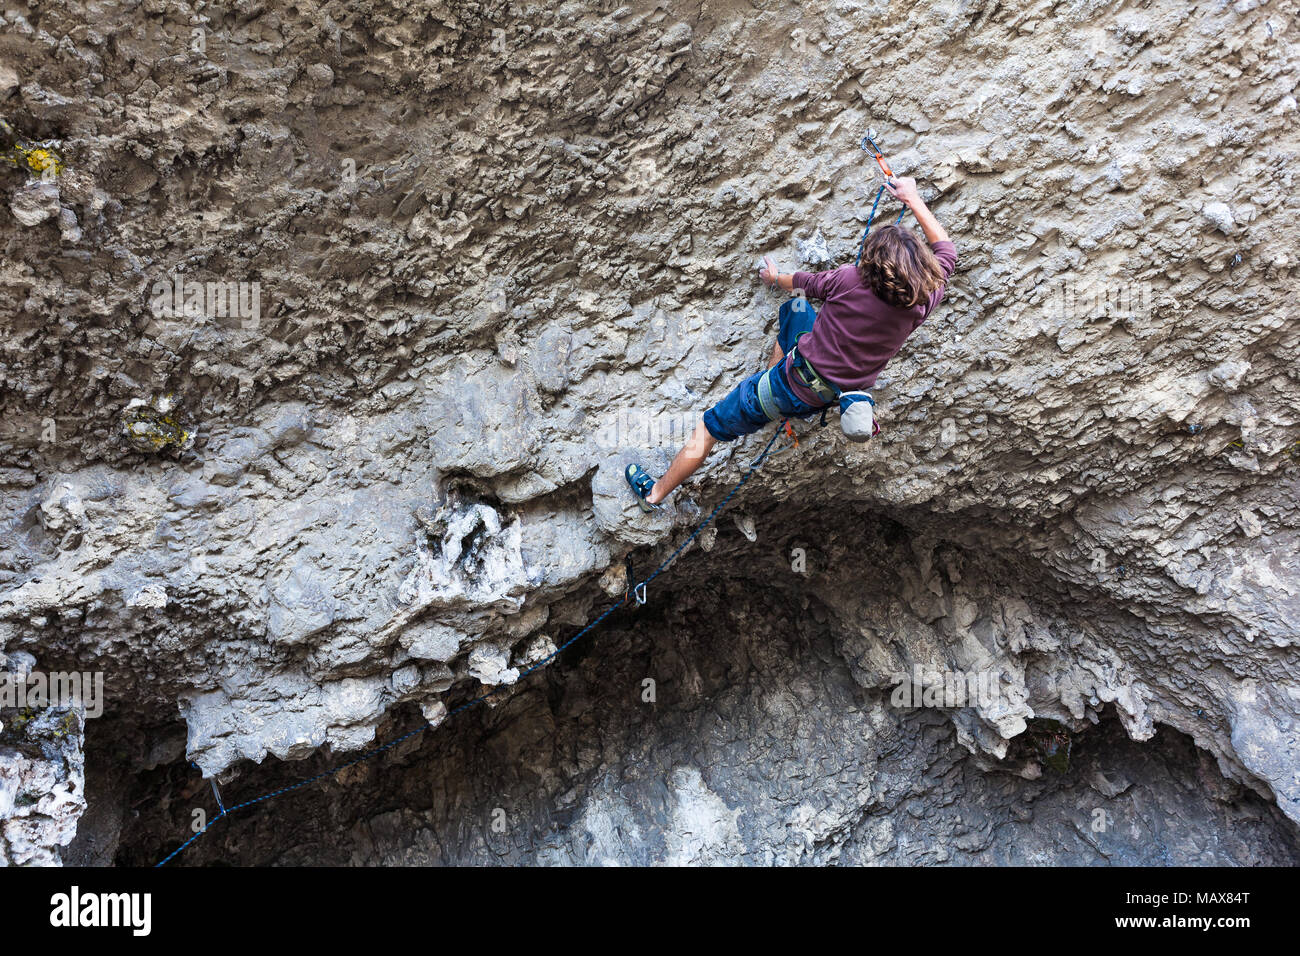 Young climber climbing the rock walls of a cave, Ecuador Stock Photo